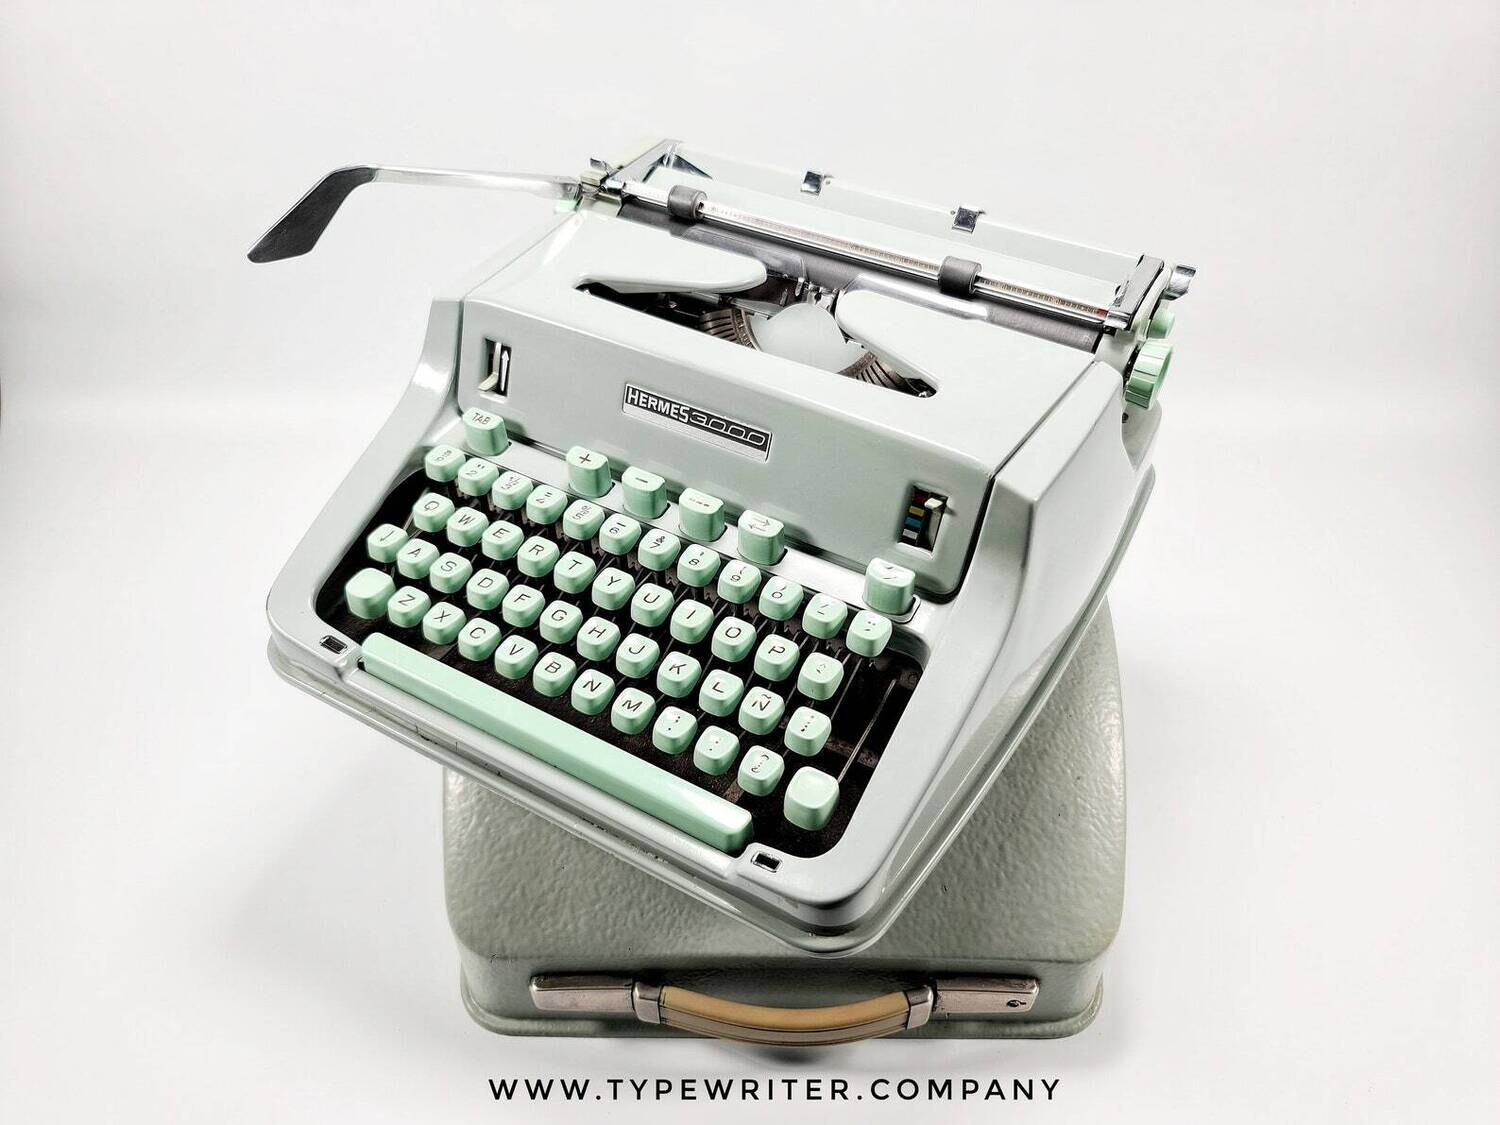 HERMES 3000 seafoam green typewriter